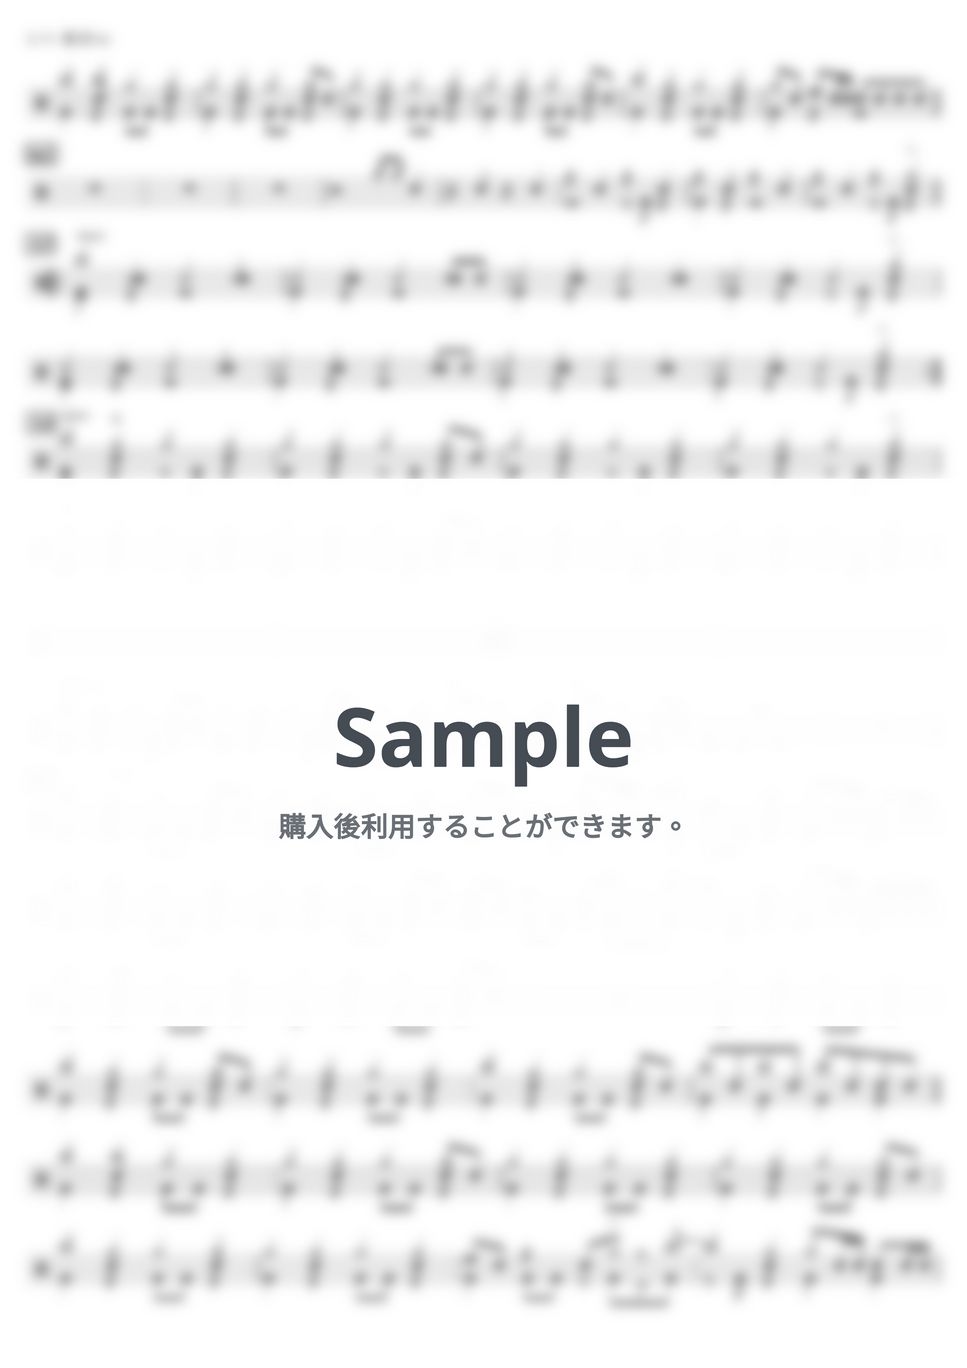 ヨルシカ - 晴る (上級) by kamishinjo-drum-school